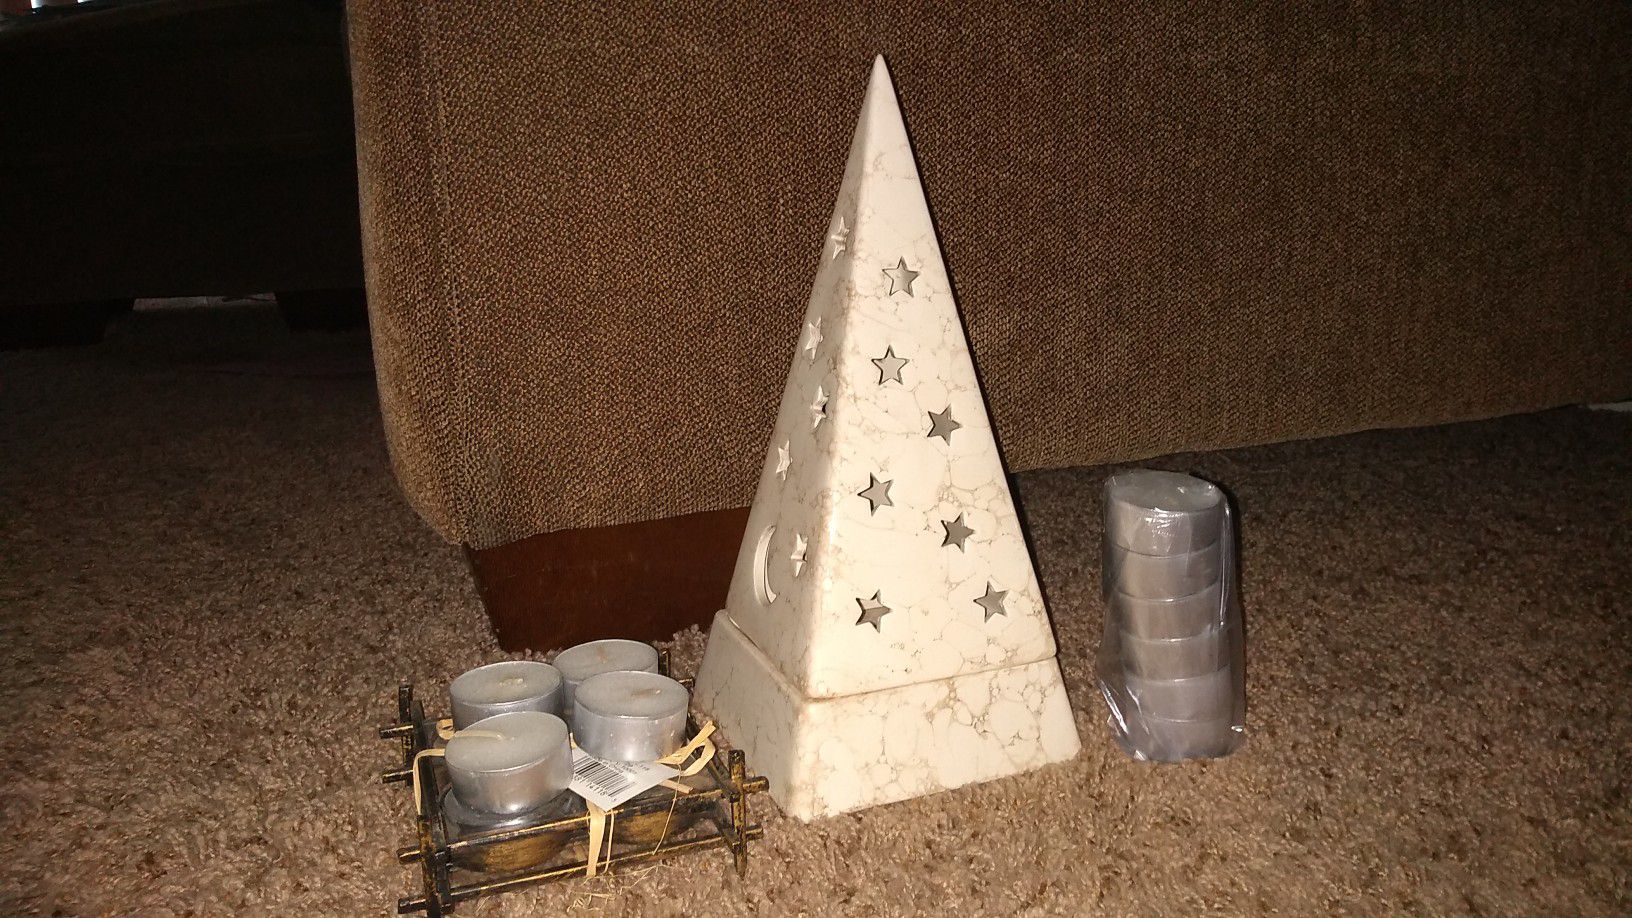 Pyramid Stars/moon tealight candle holder w/ unused tealight candles